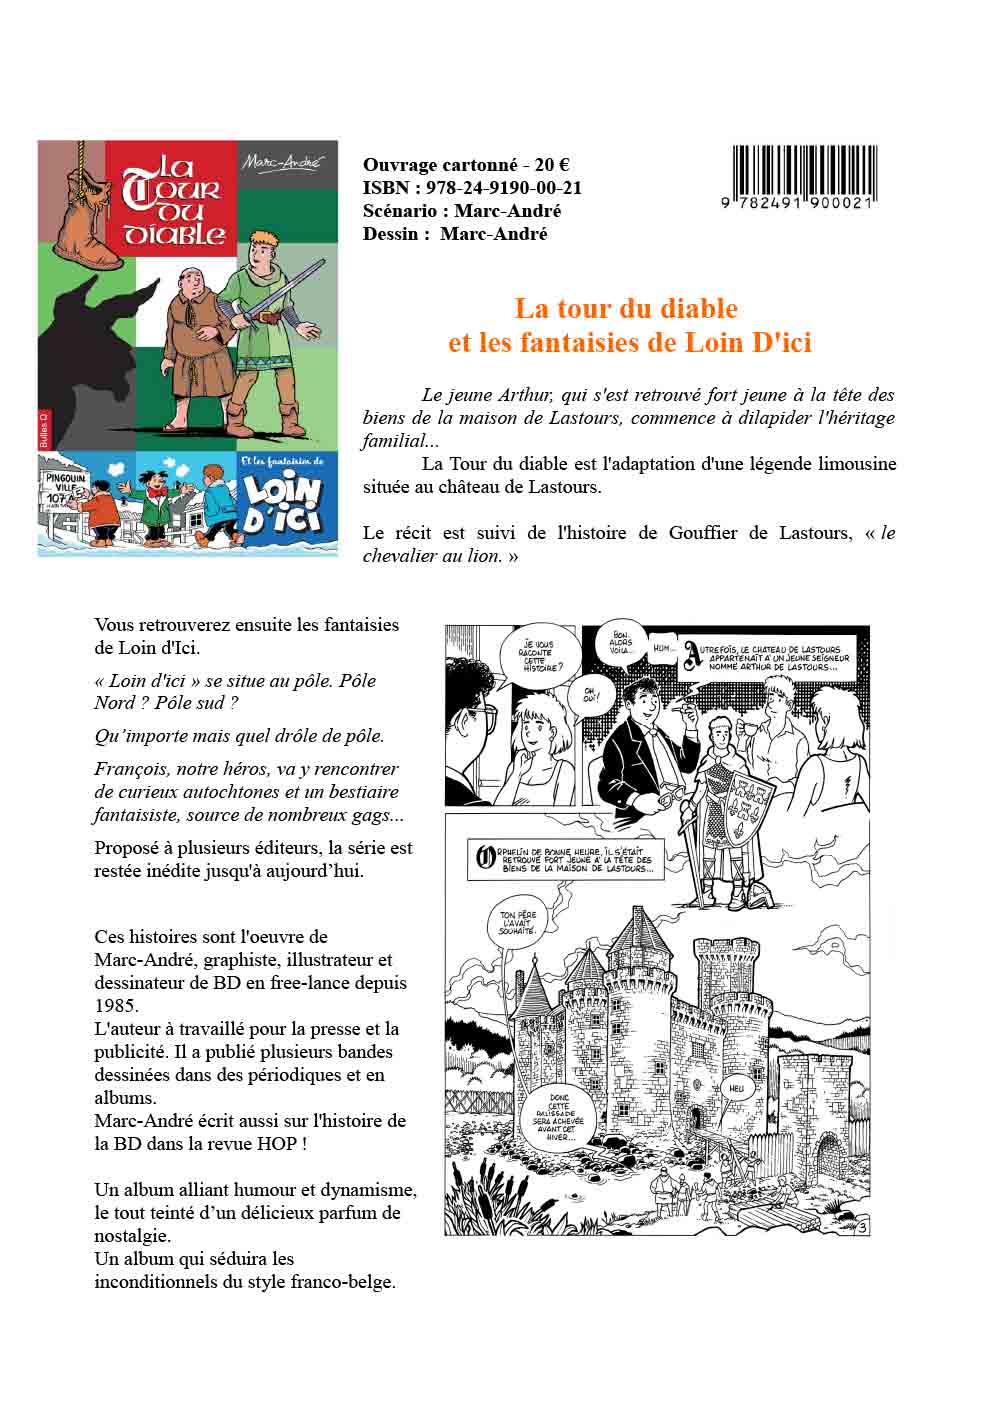 La Tour du diable et les fantaisies de Loin d'Ici Fiche promotion album Bulles O 2021 Marc-André BD Illustration Graphisme Limoges